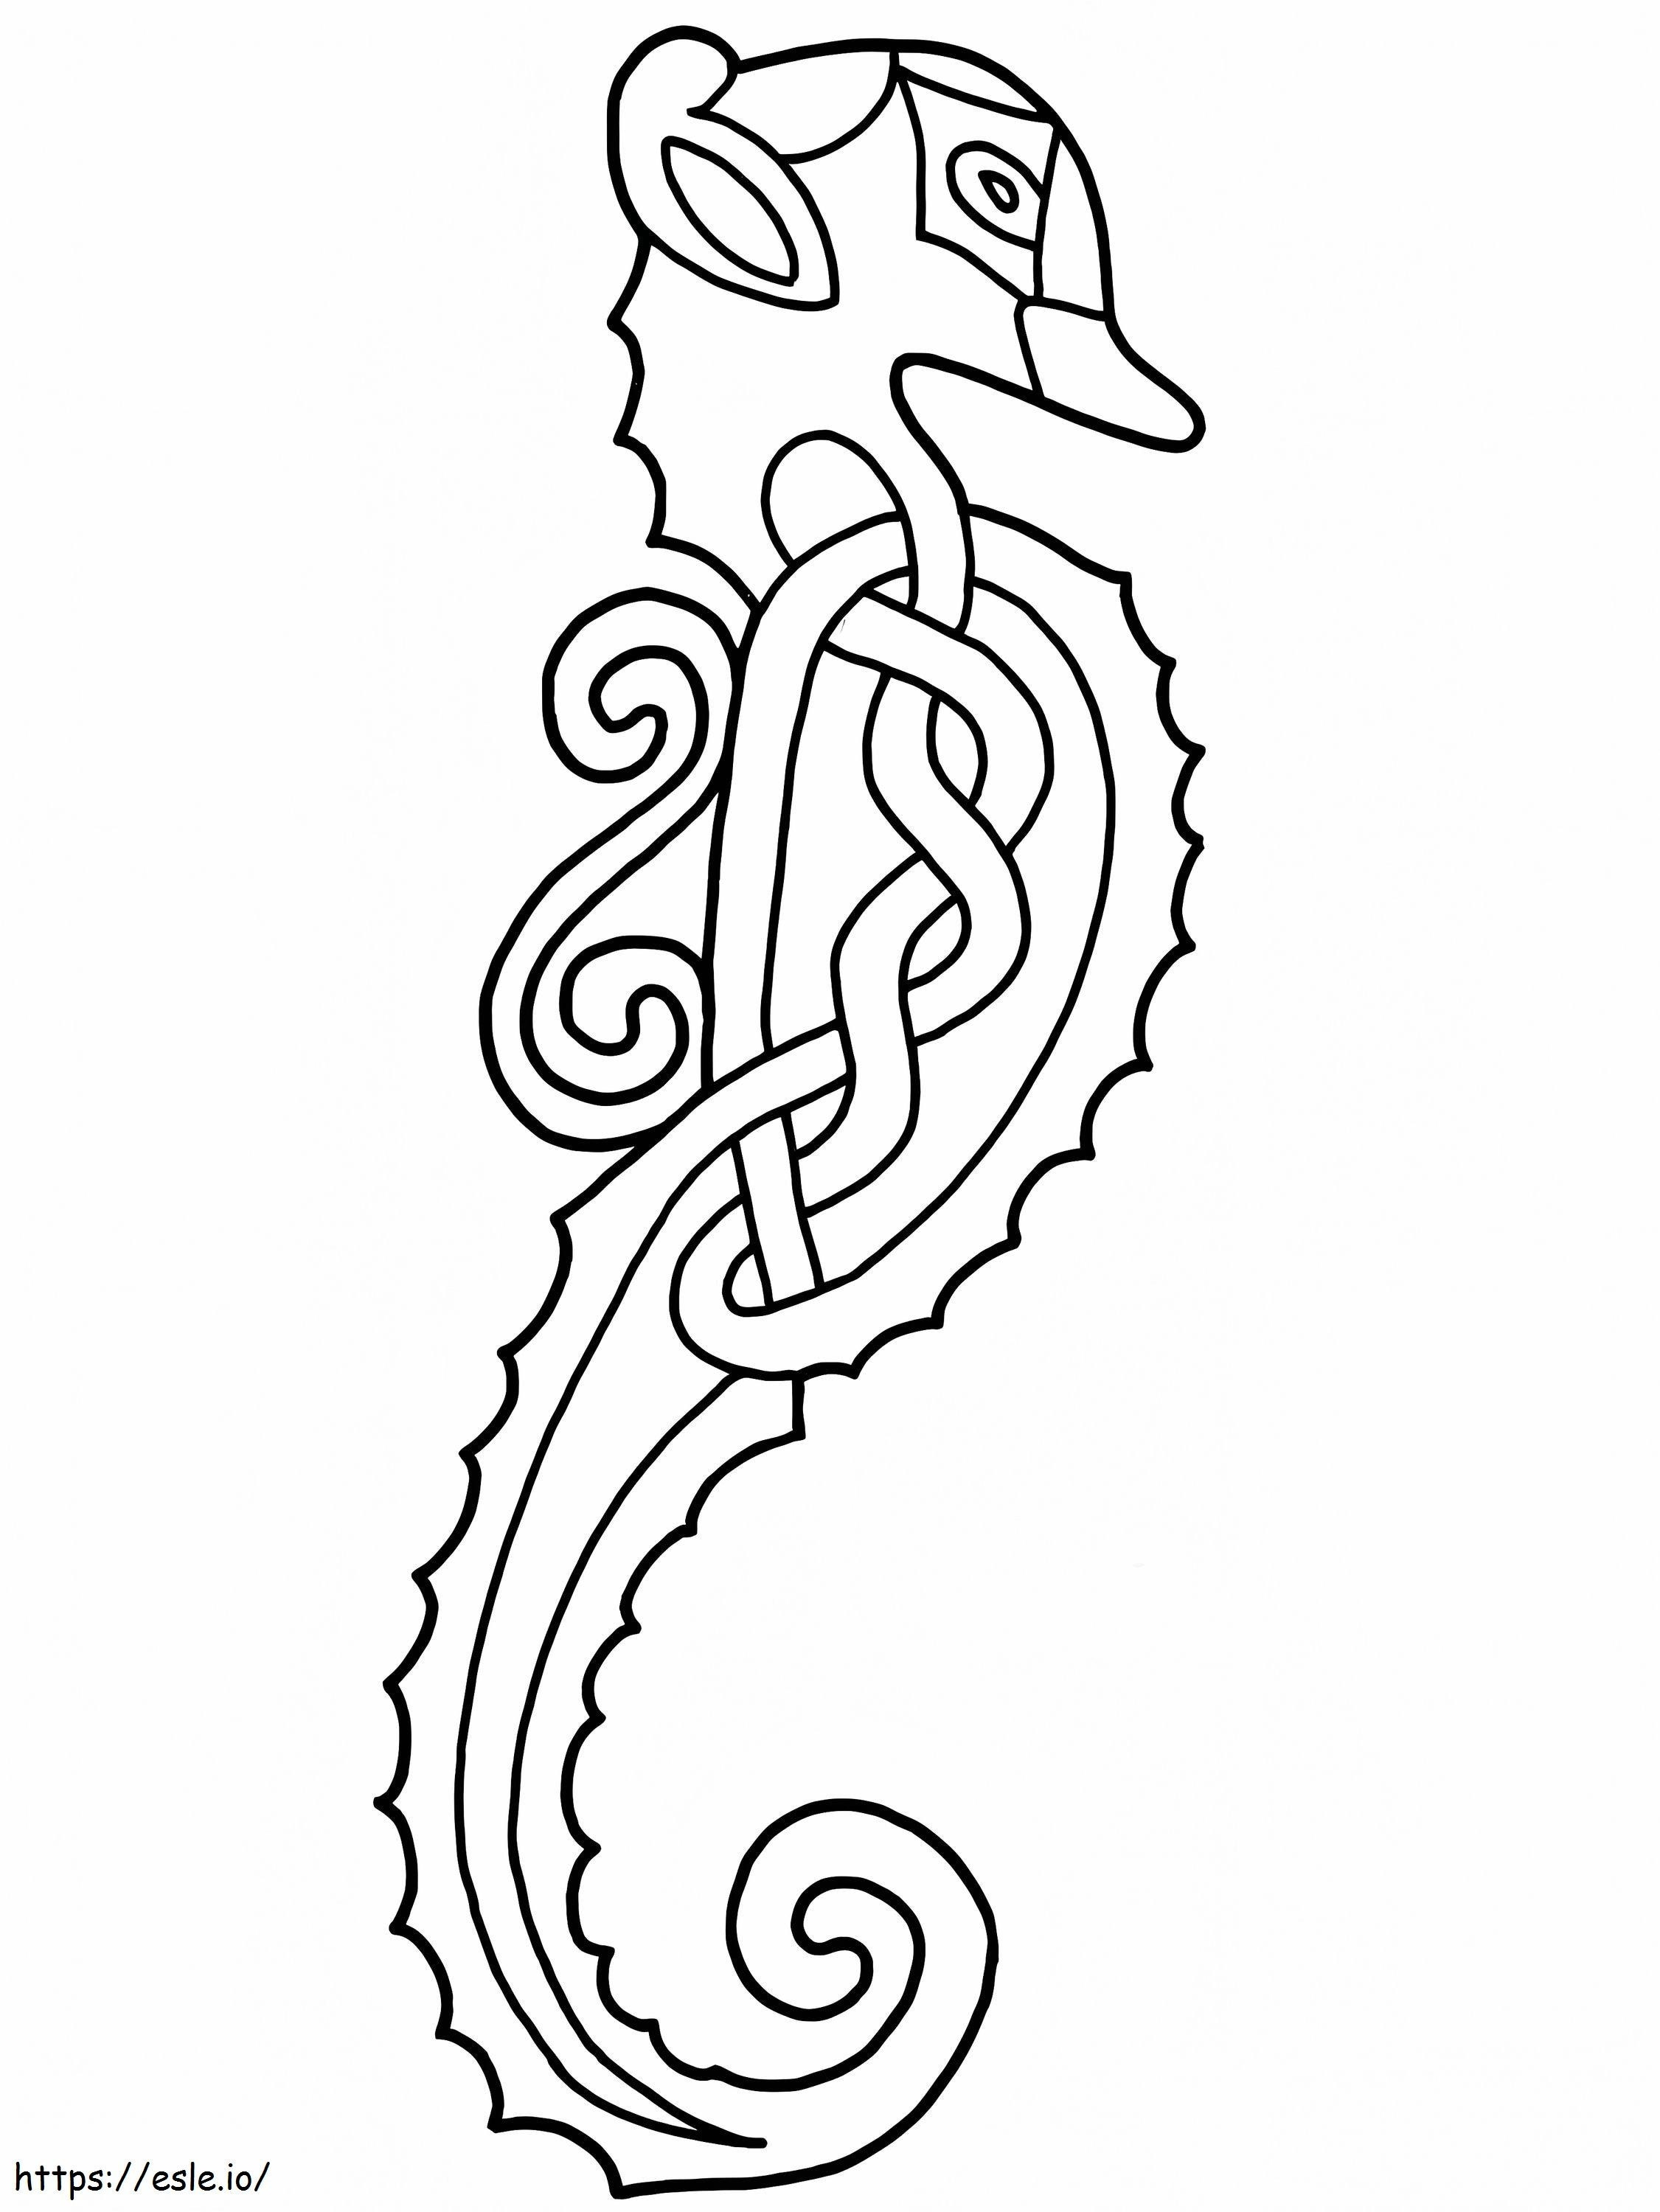 Diseño de caballito de mar celta para colorear